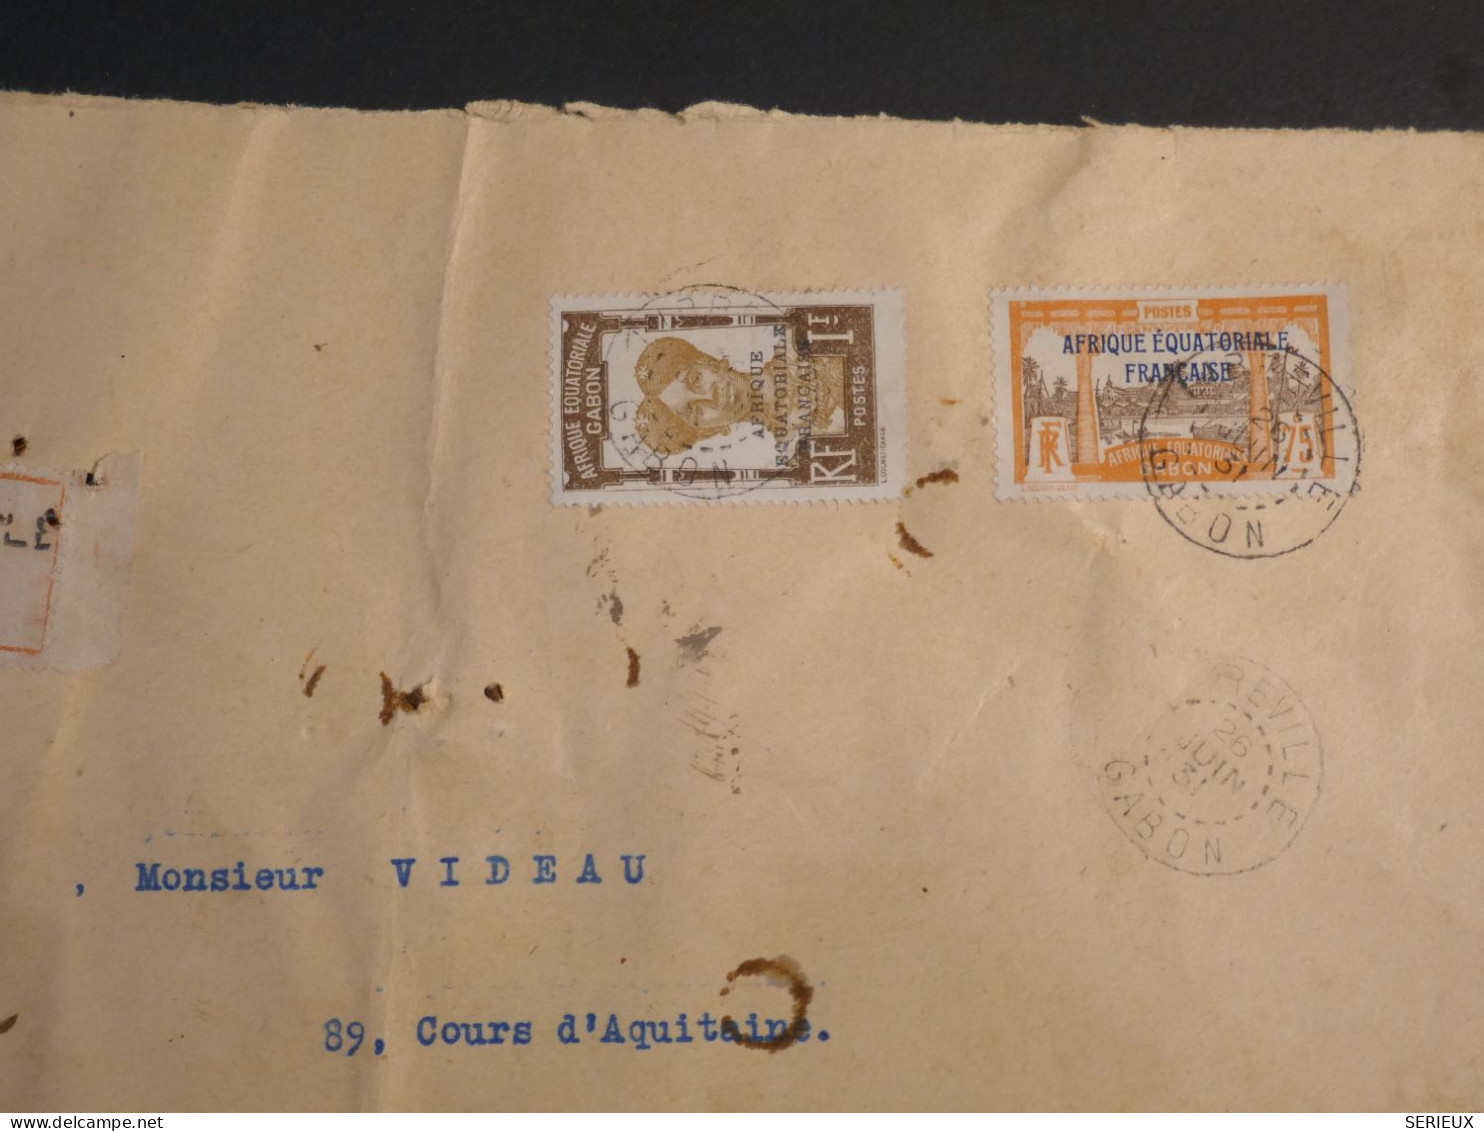 DM 21 AEF GABON BELLE   LETTRE RECO 1931 LIBREVILLE A BORDEAUX FRANCE   + +POINCONS + AFF. INTERESSANT+ - Storia Postale